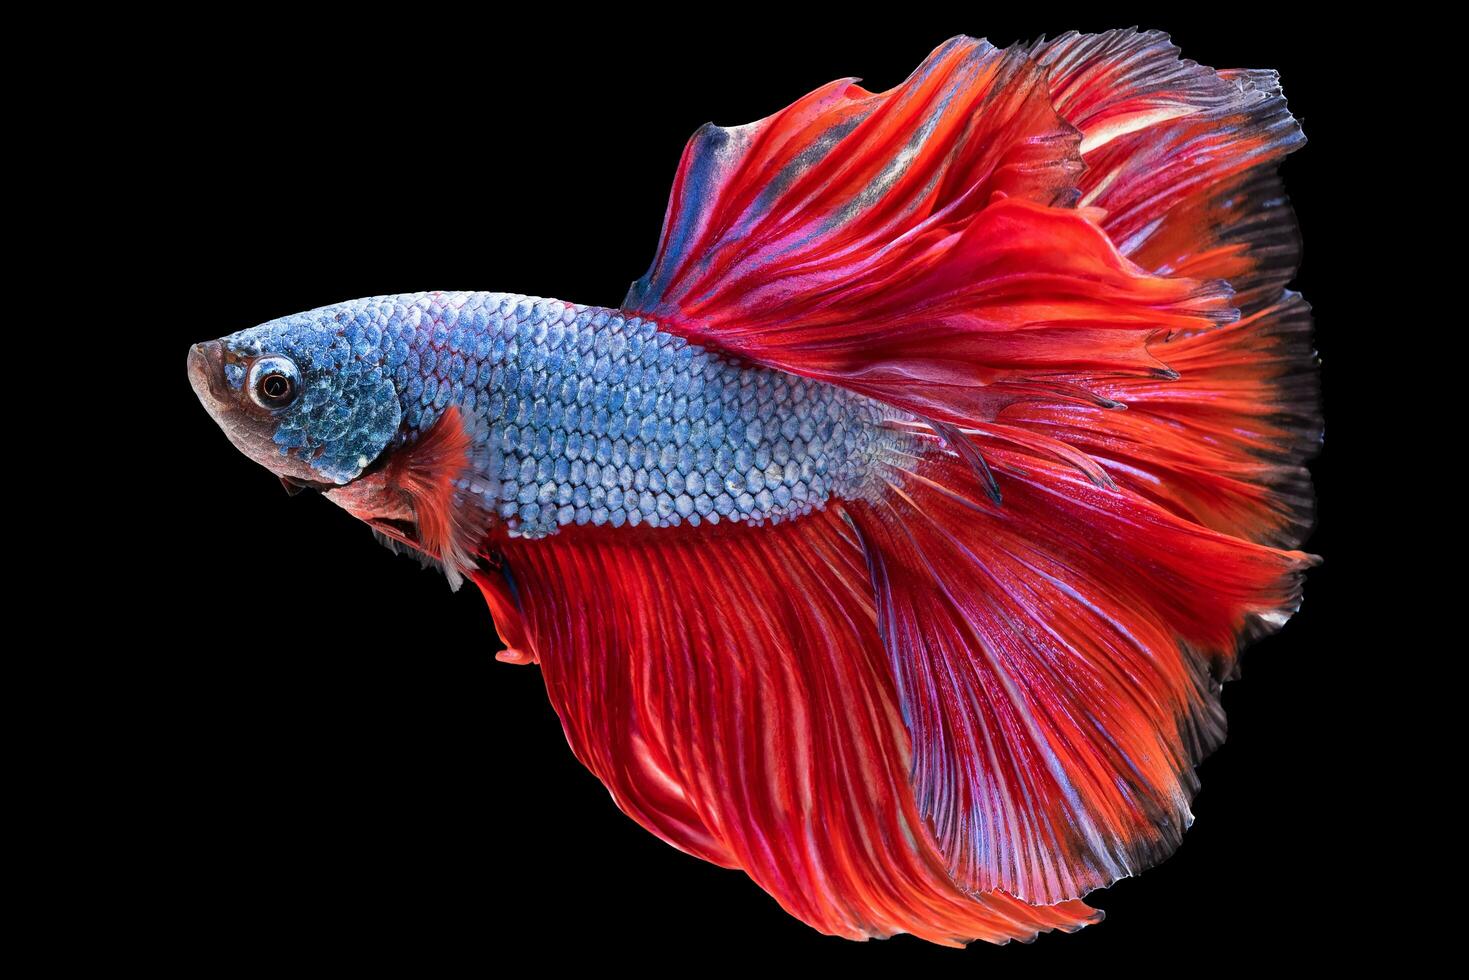 contre le foncé et mystérieux noir toile de fond le betta du poisson bleu corps et rouge queue forme un enchanteur visuel spectacle cette points forts le inhérent beauté de cette majestueux créature. photo